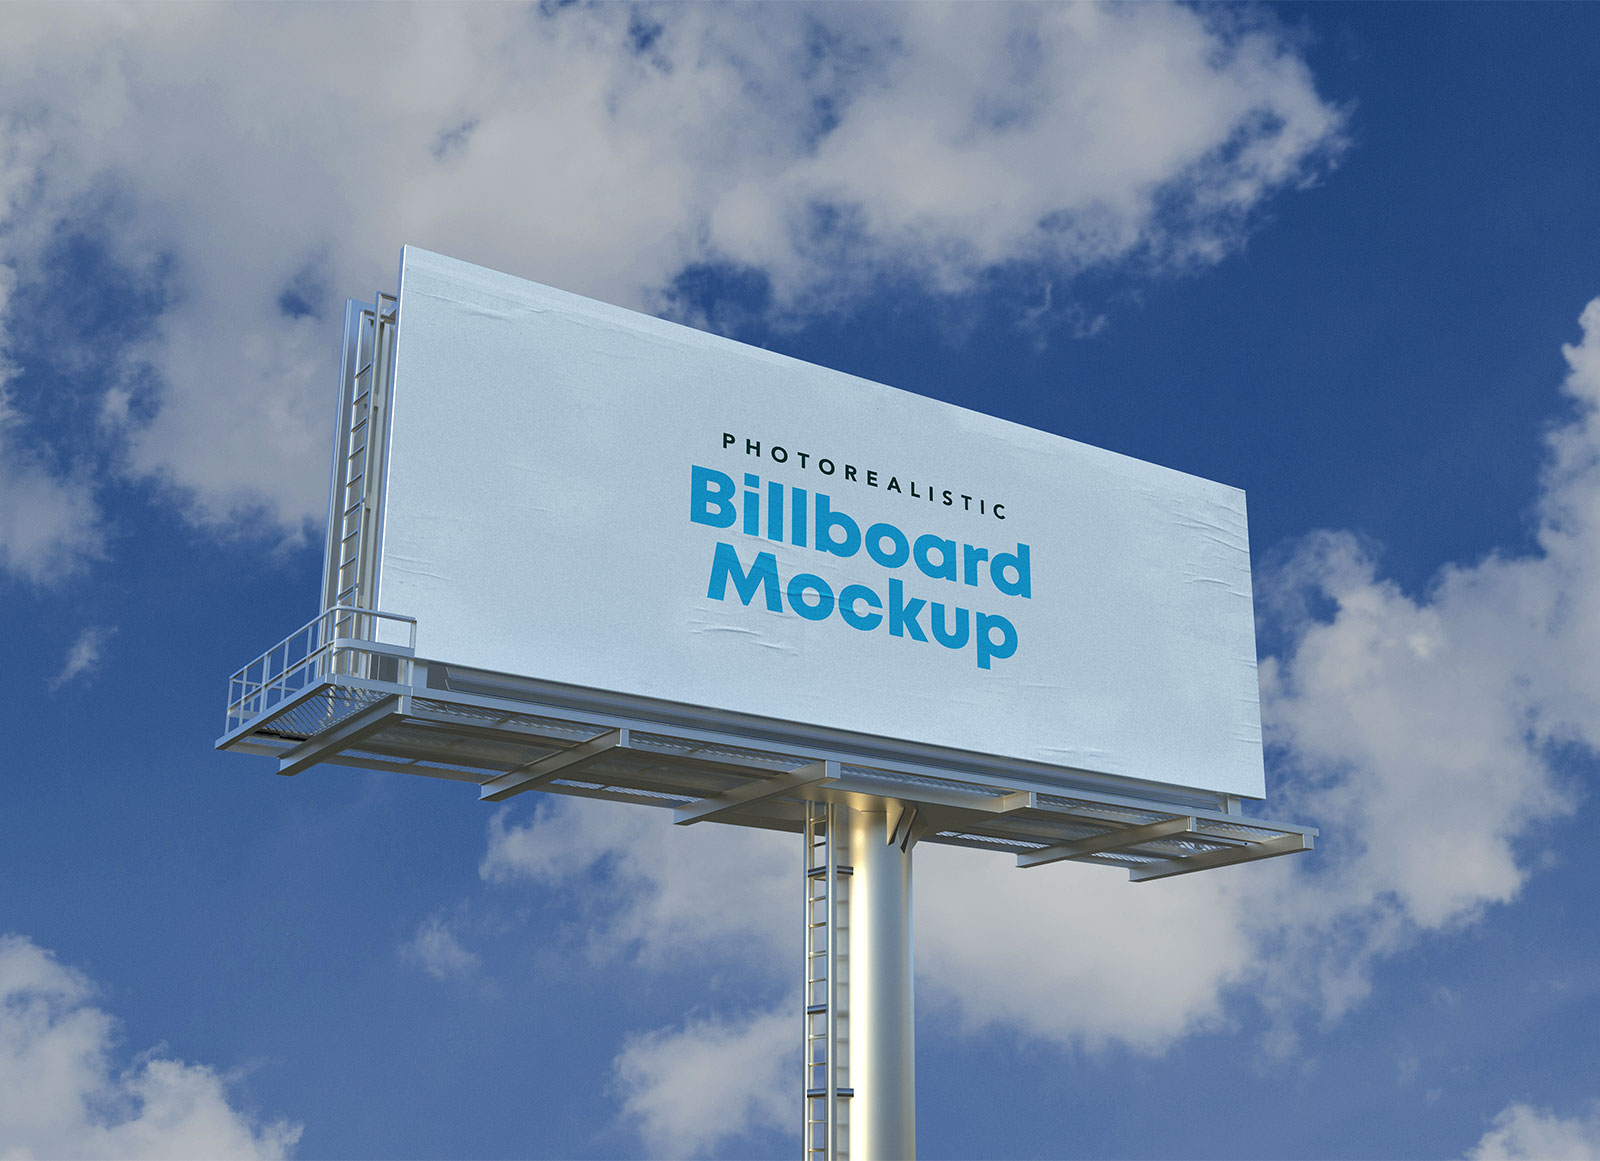 Photorealistic Outdoor Ad Billboard Mockup